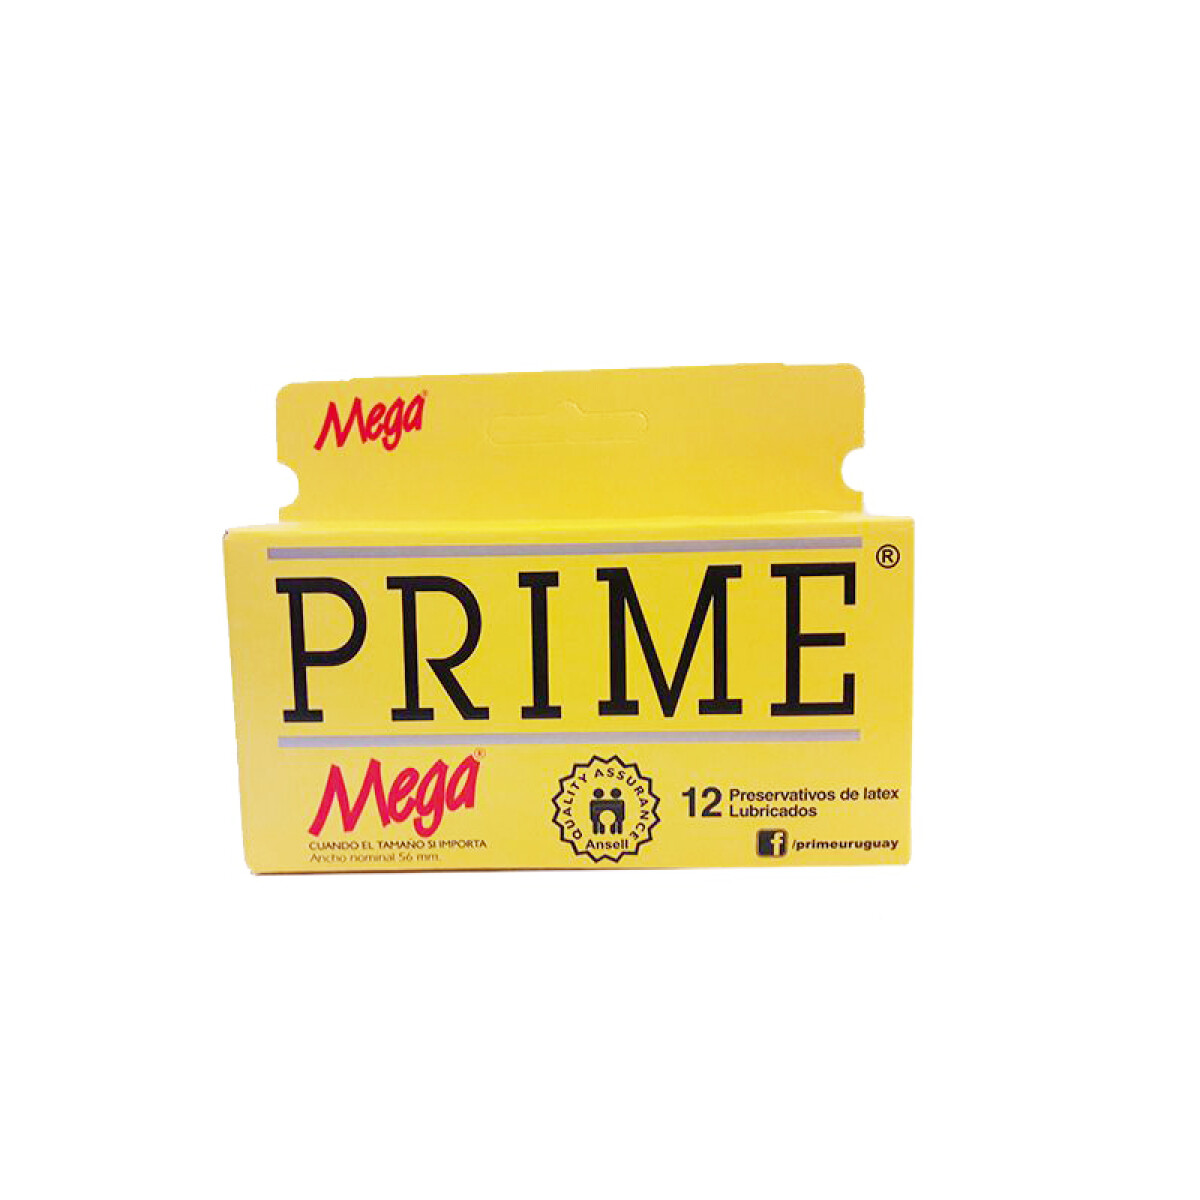 Preservativo PRIME (cajita x12u ) - Mega 